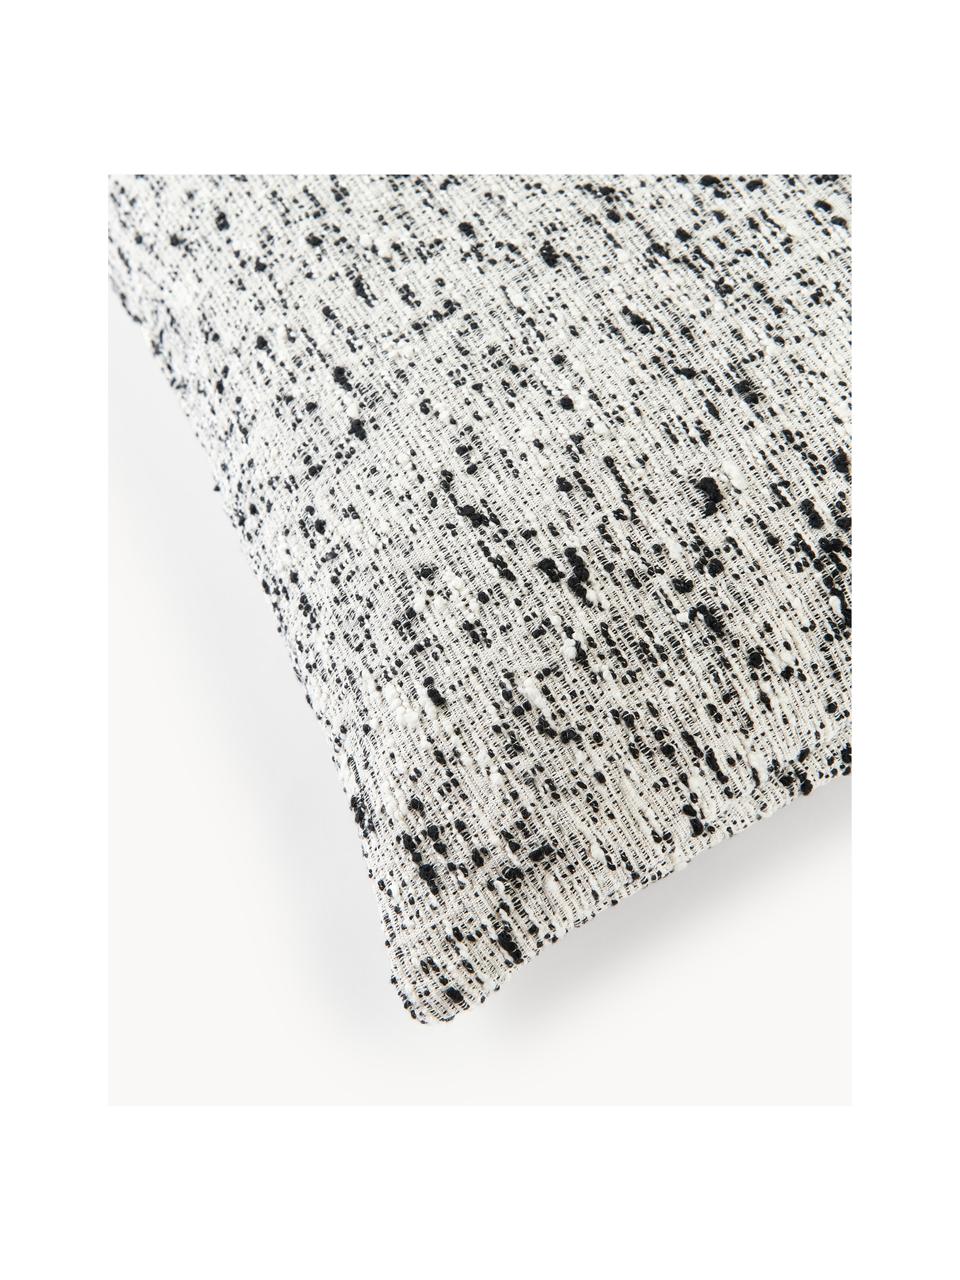 Bouclé kussenhoes Talea, Bouclé (92% katoen, 8% polyester)

Bouclé is een materiaal dat zich kenmerkt door zijn onregelmatig gebogen structuur. Het karakteristieke oppervlak ontstaat door geweven lussen van verschillende garens die de stof een unieke structuur geven. De lusstructuur heeft een isolerende en tegelijkertijd pluizige werking, waardoor de stof bijzonder knuffelig is., Zwart, wit, B 50 x L 50 cm